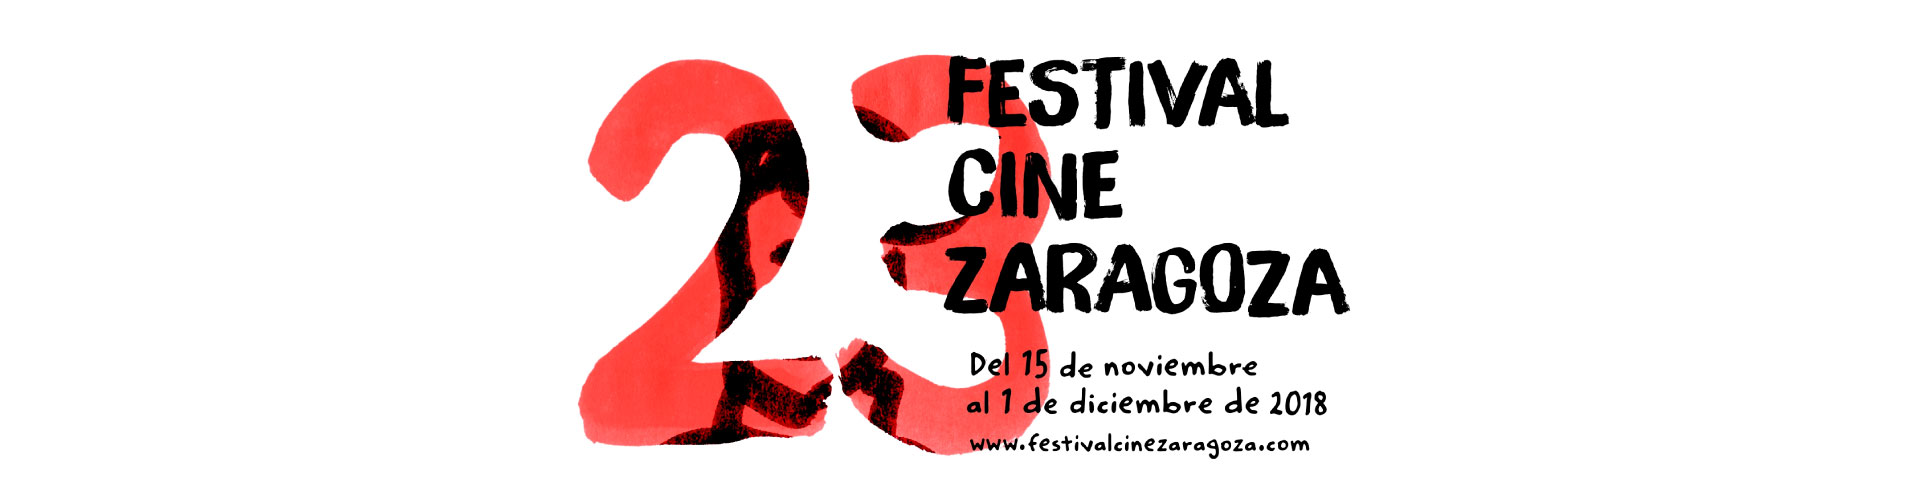 Festival de Cine de Zaragoza. Edición 23